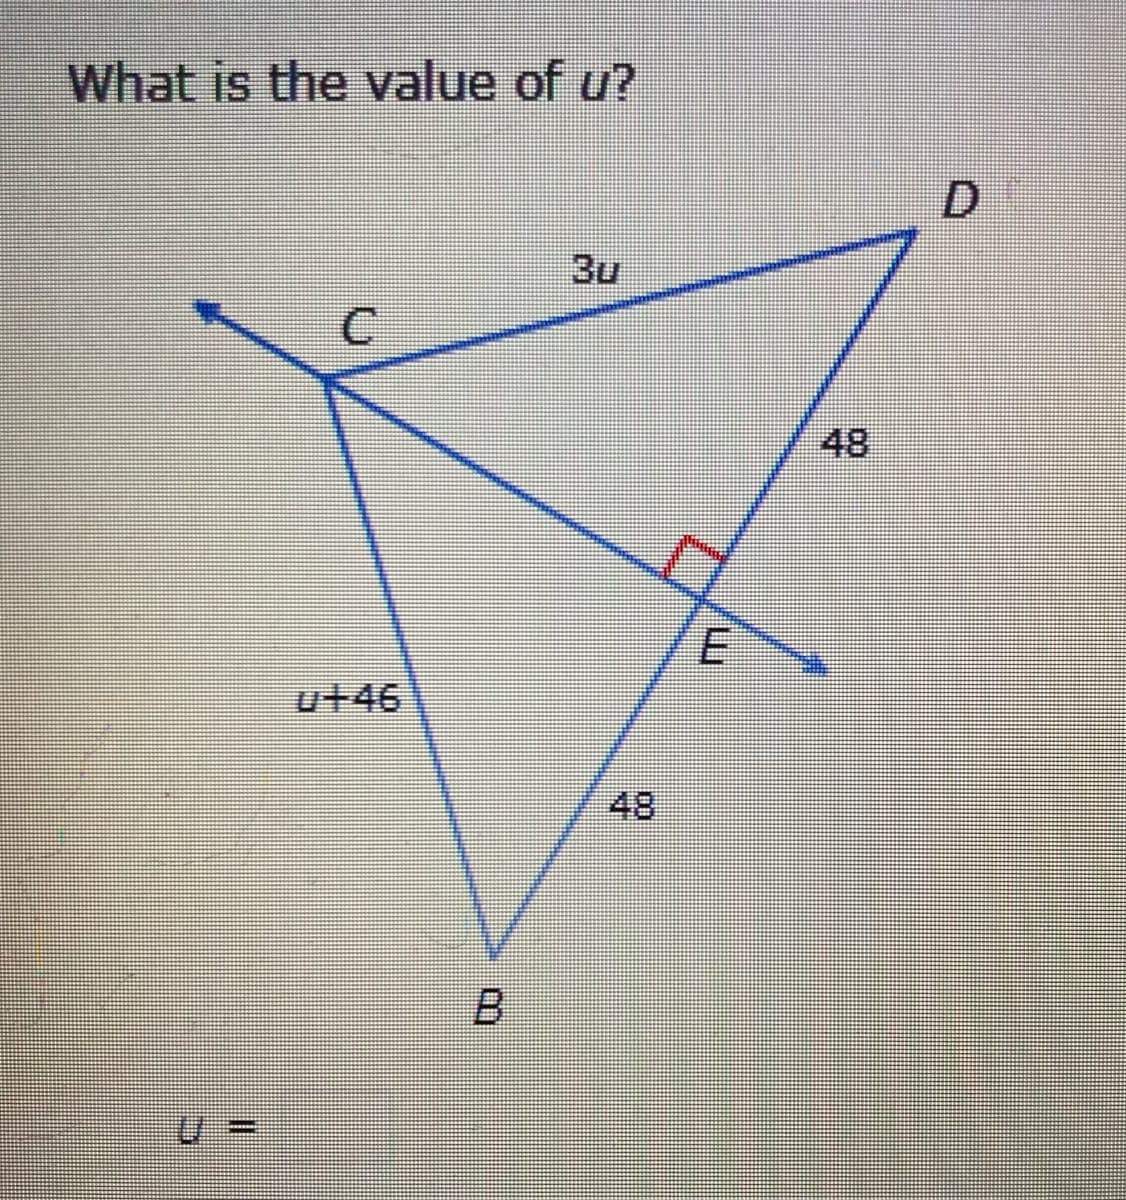 What is the value of u?
3u
48
u+46
48
B.
